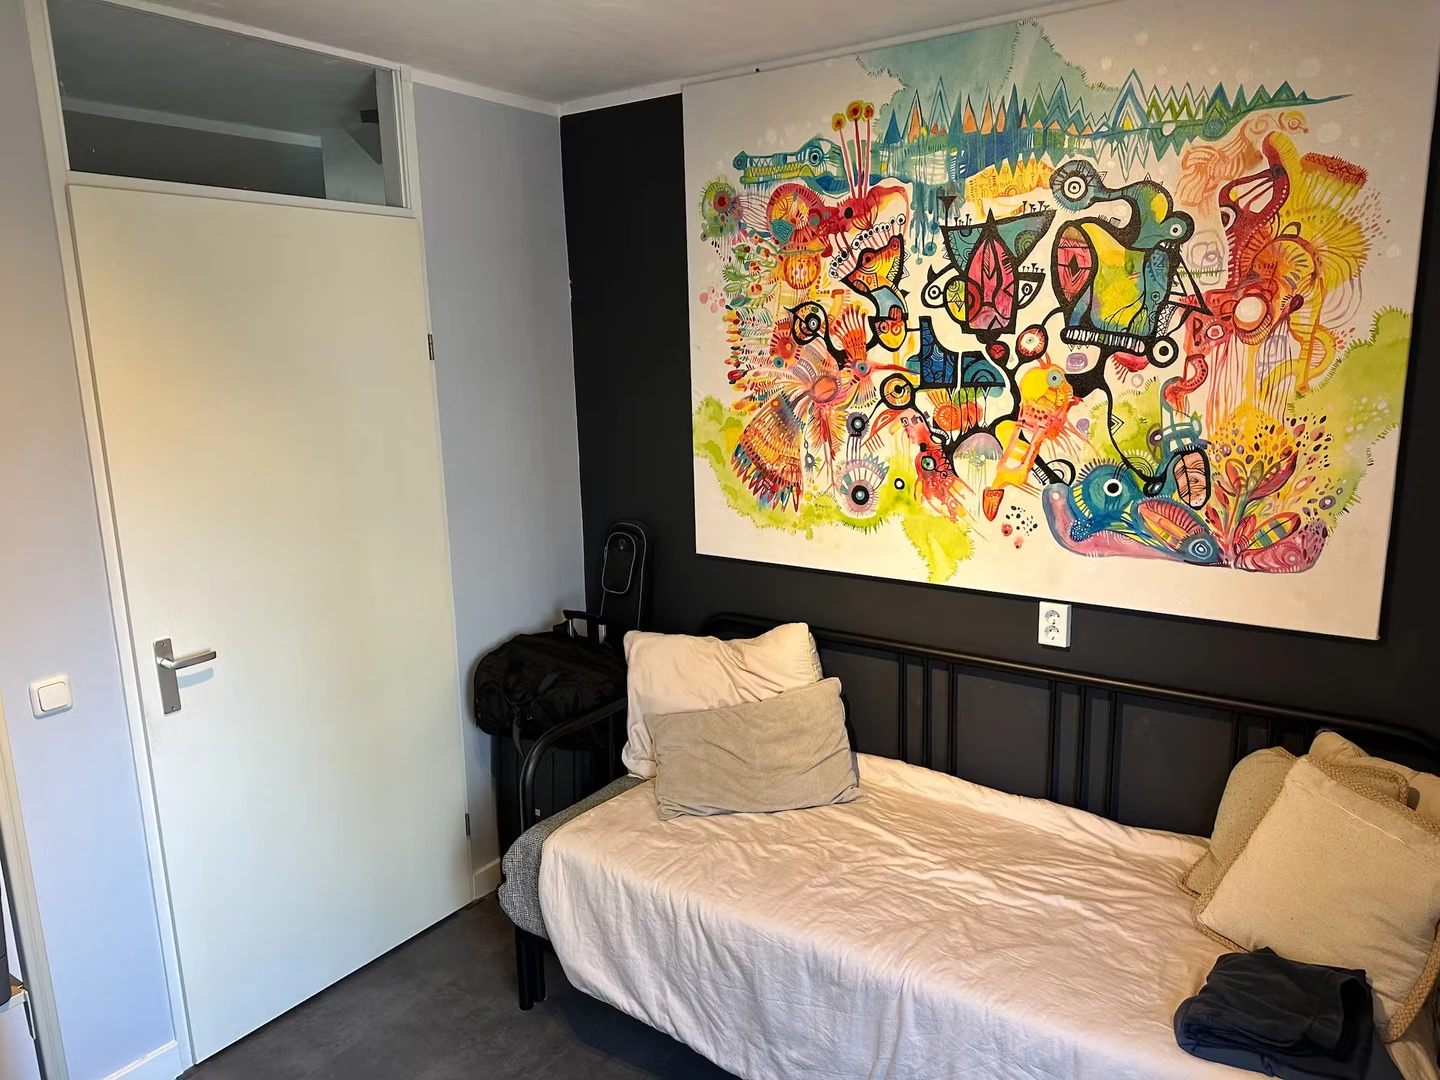 Habitación en alquiler con cama doble Amsterdam